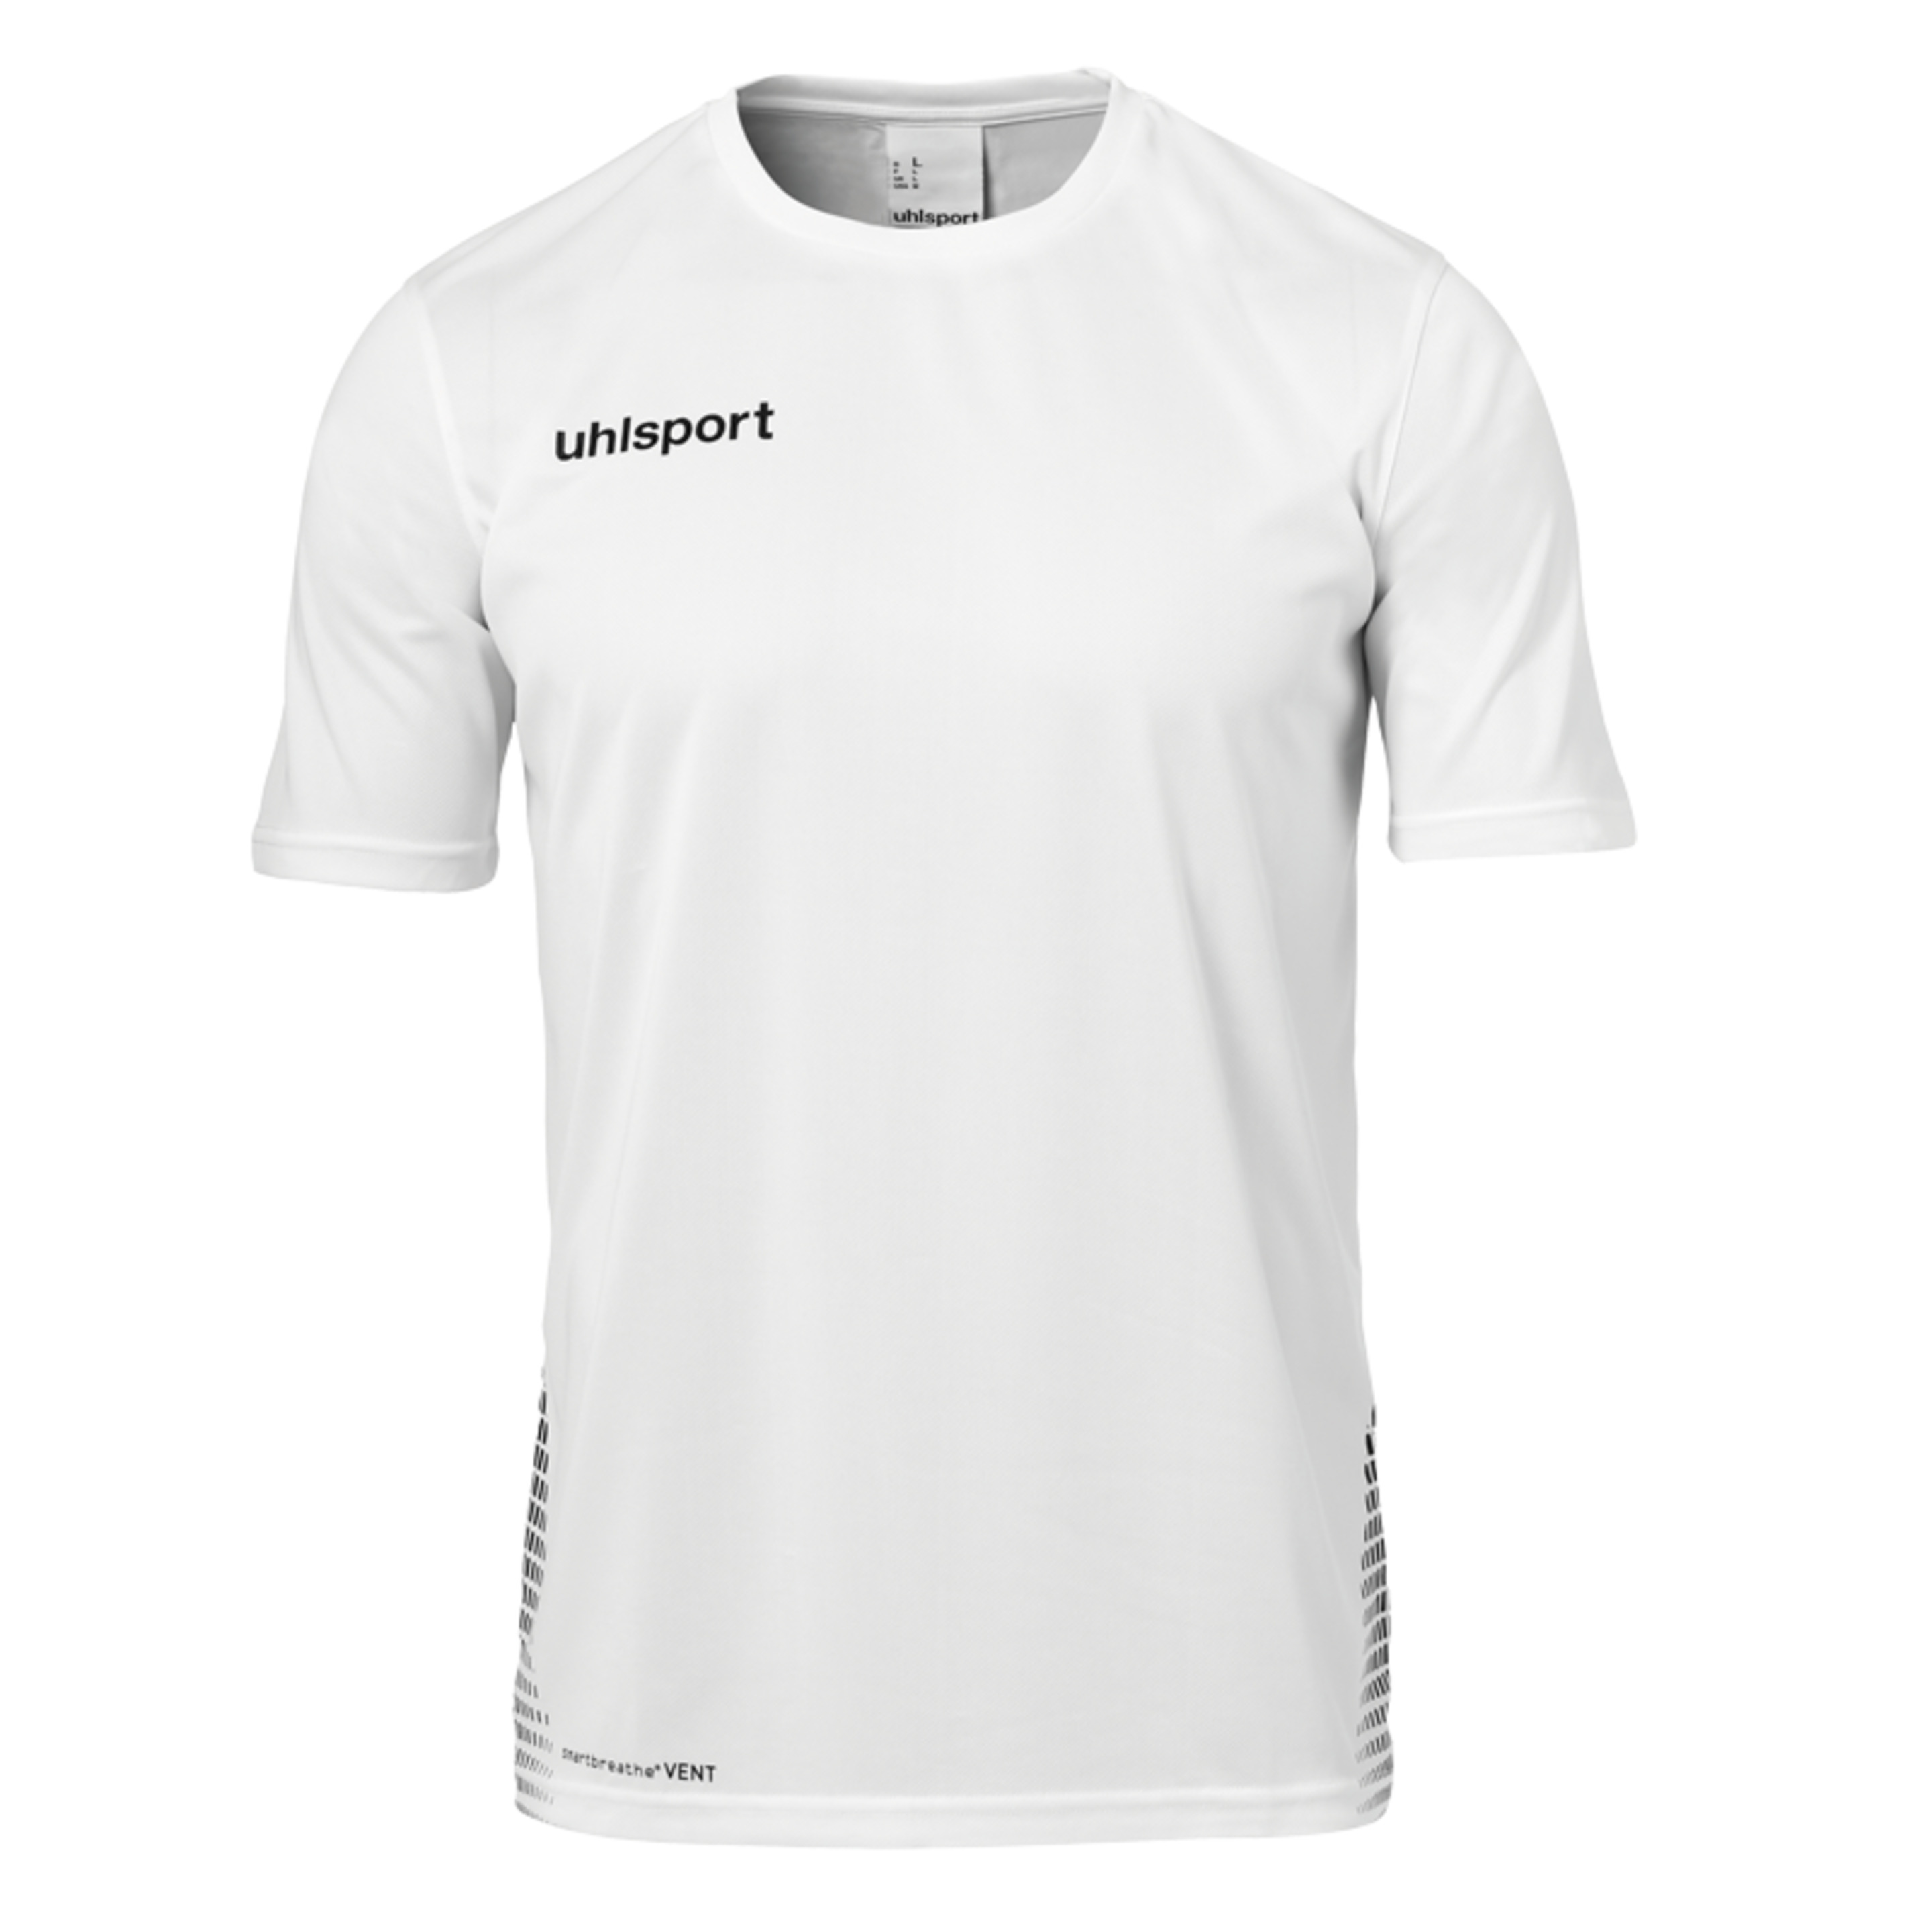 Score Training T-shirt Blanco/negro Uhlsport